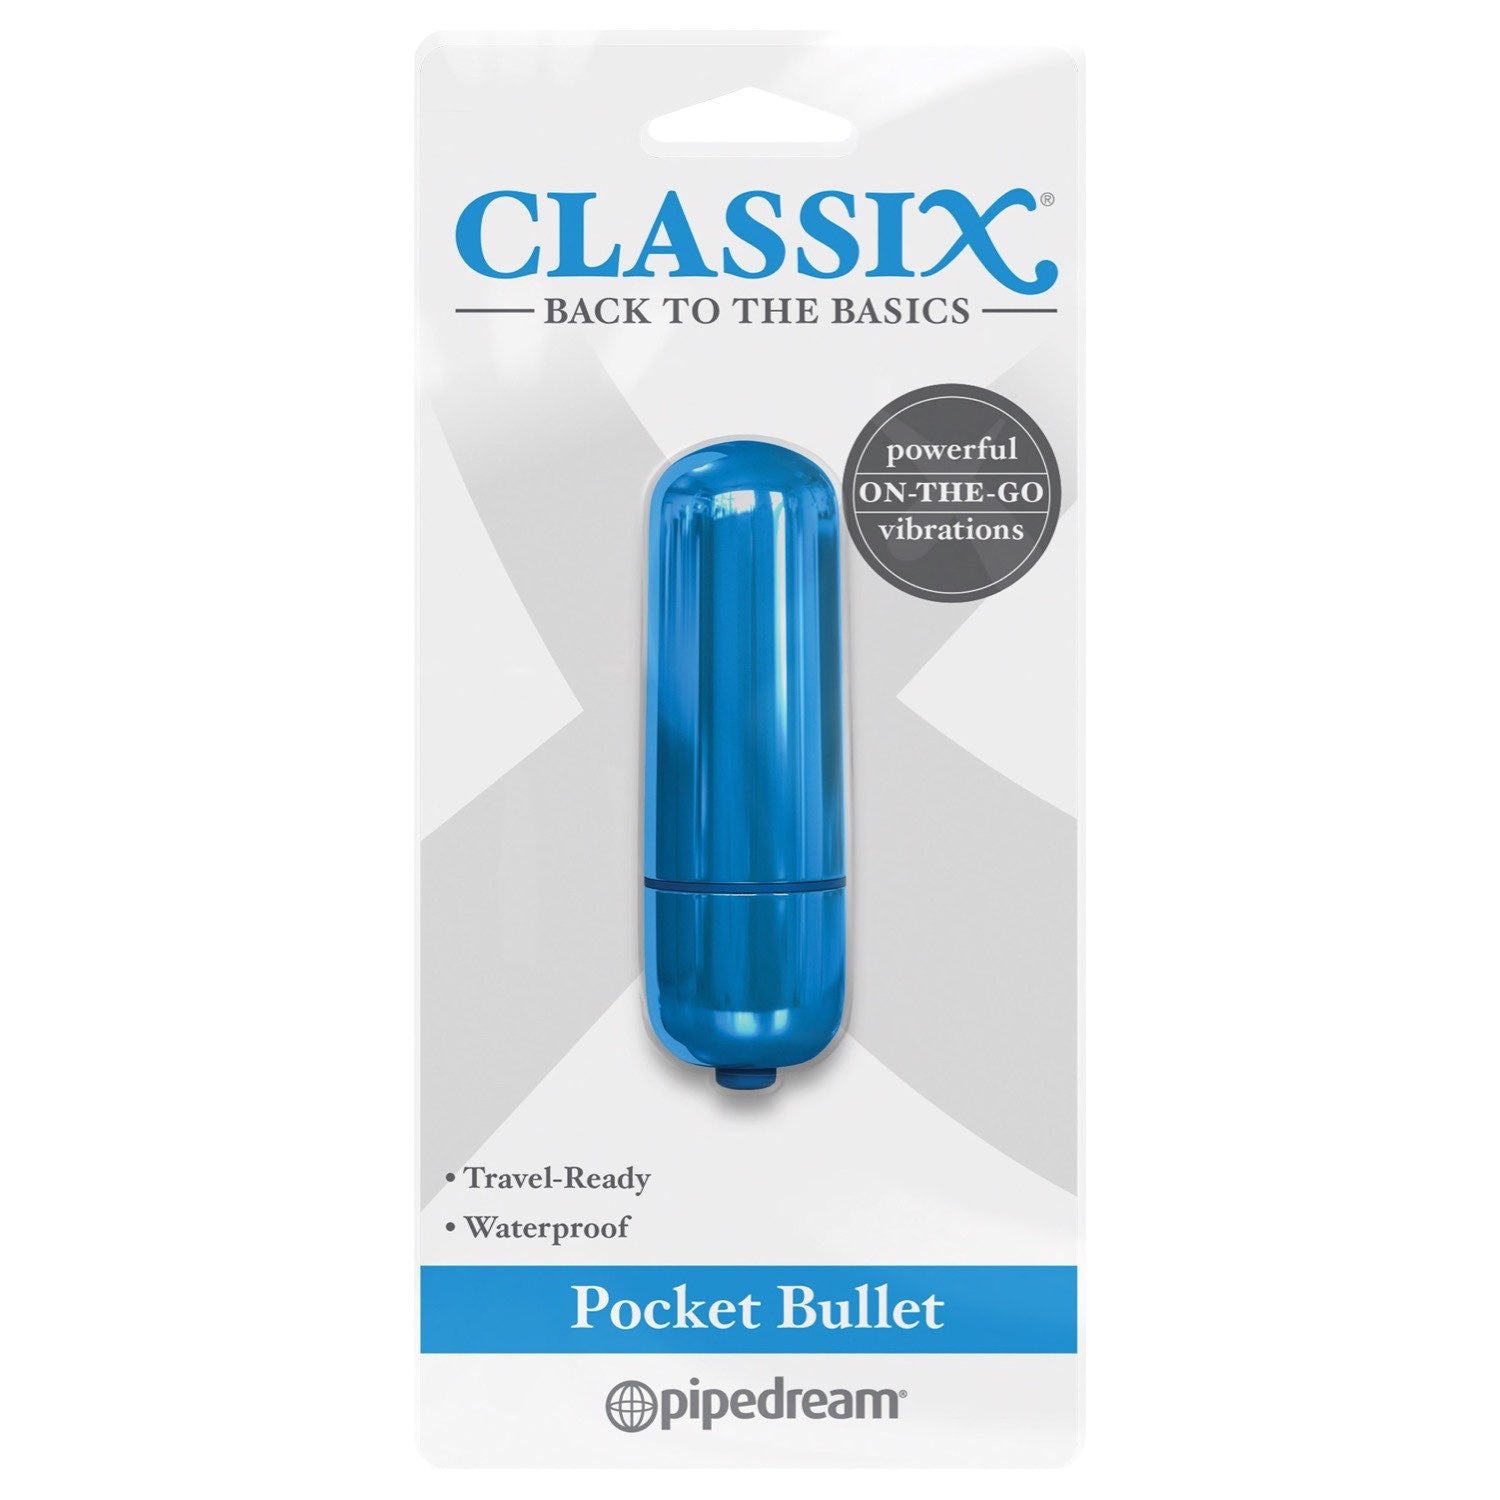 क्लासिक्स पॉकेट बुलेट - मैटेलिक ब्लू 5.6 सेमी बुलेट by Pipedream